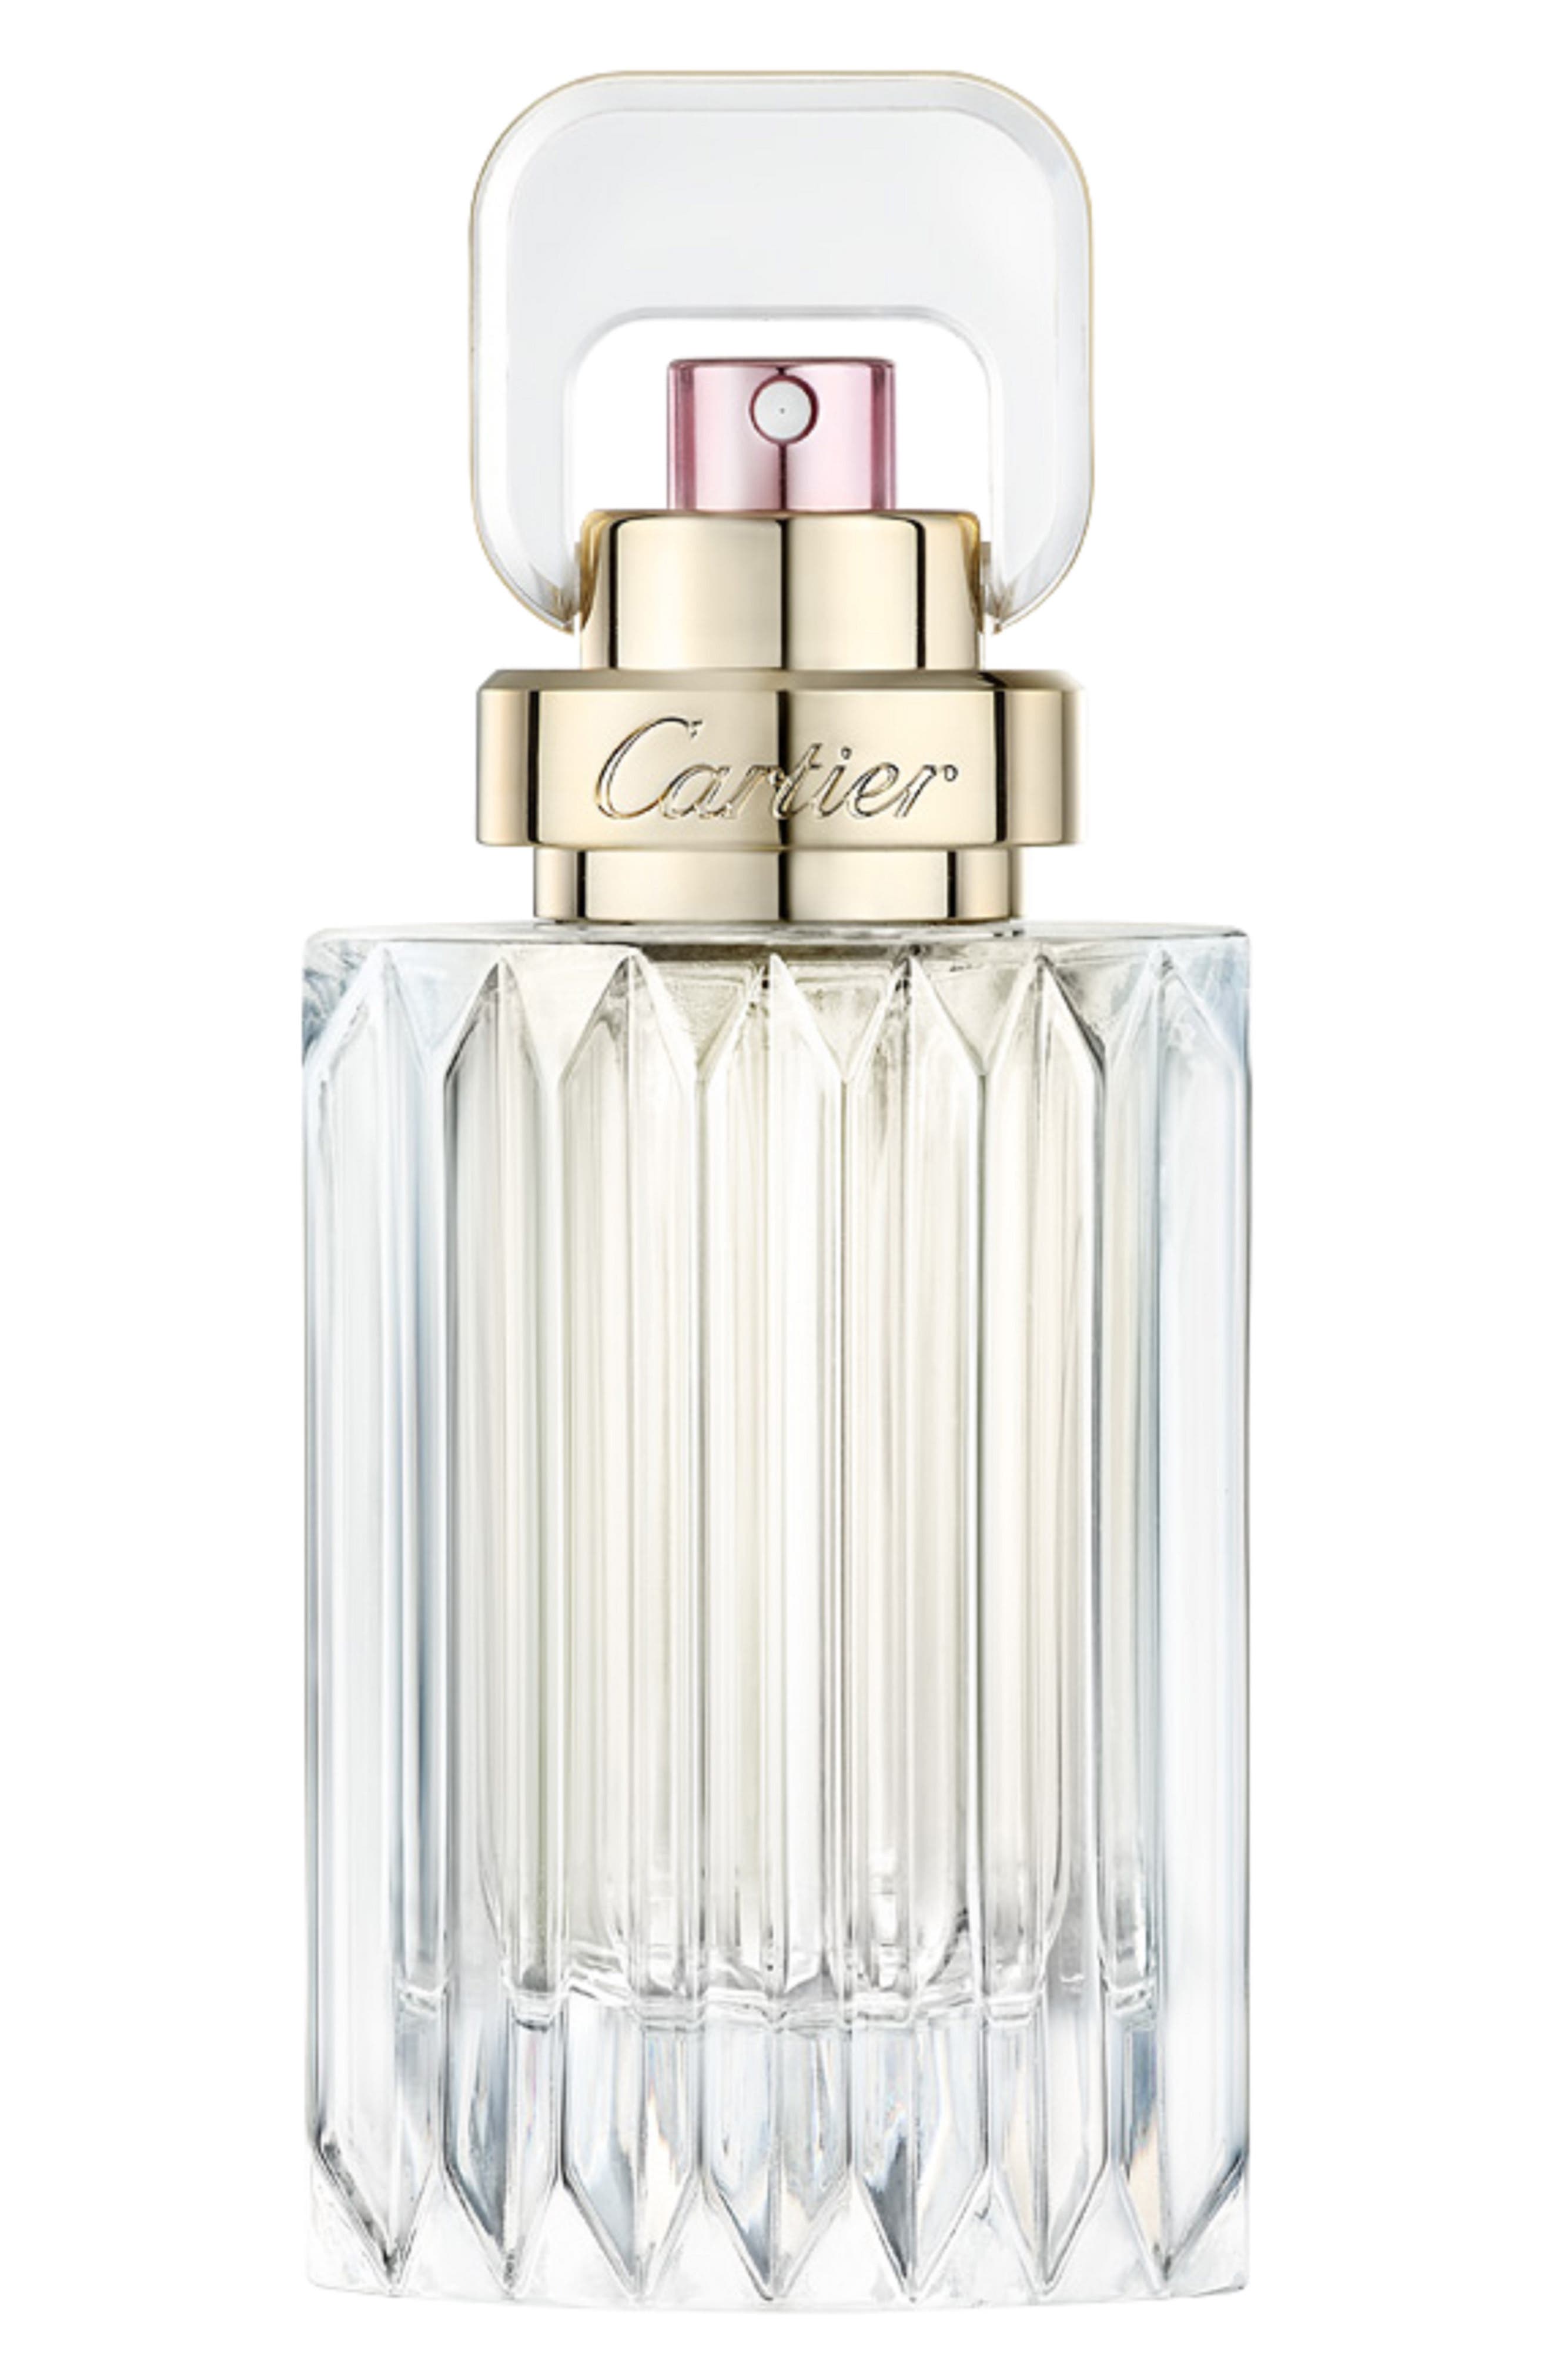 Cartier Carat Eau de Parfum at Nordstrom, Size 3.3 Oz